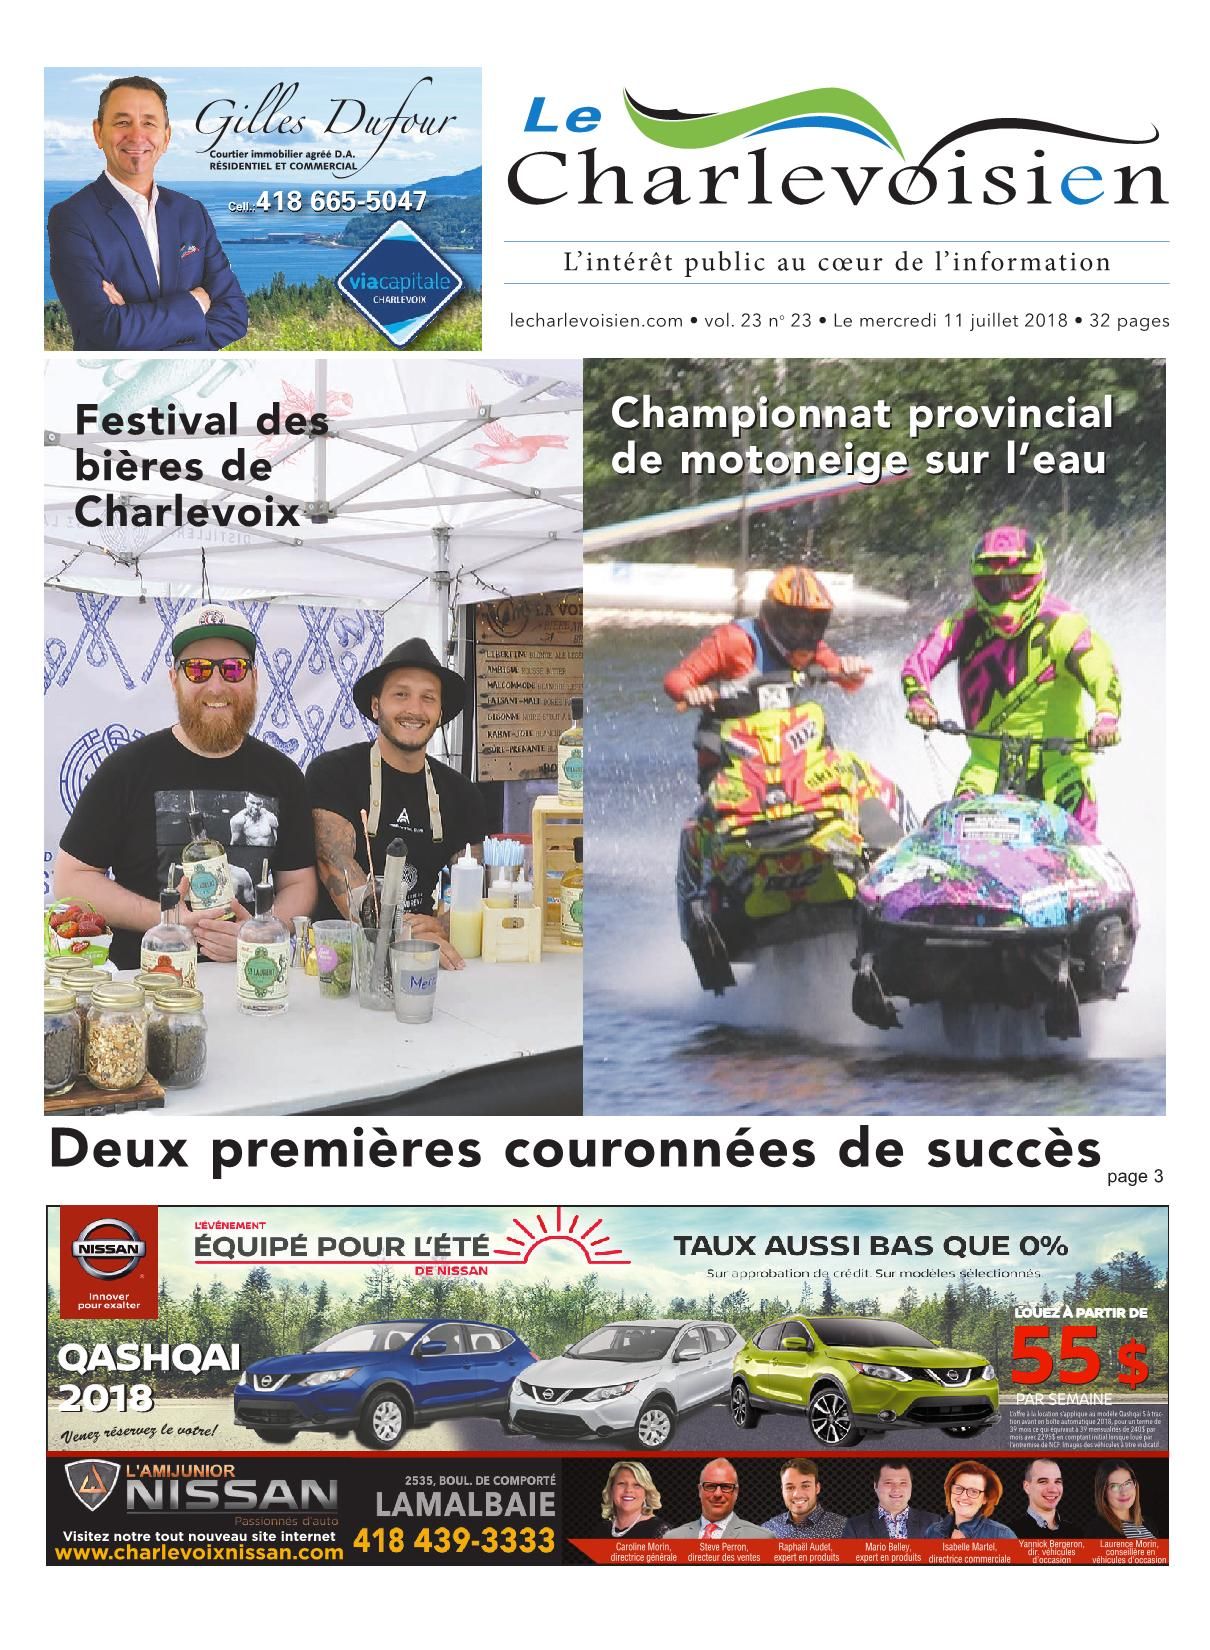 Promo Salon De Jardin Inspirant Le Charlevoisien 11 Juillet 2018 Pages 1 32 Text Version